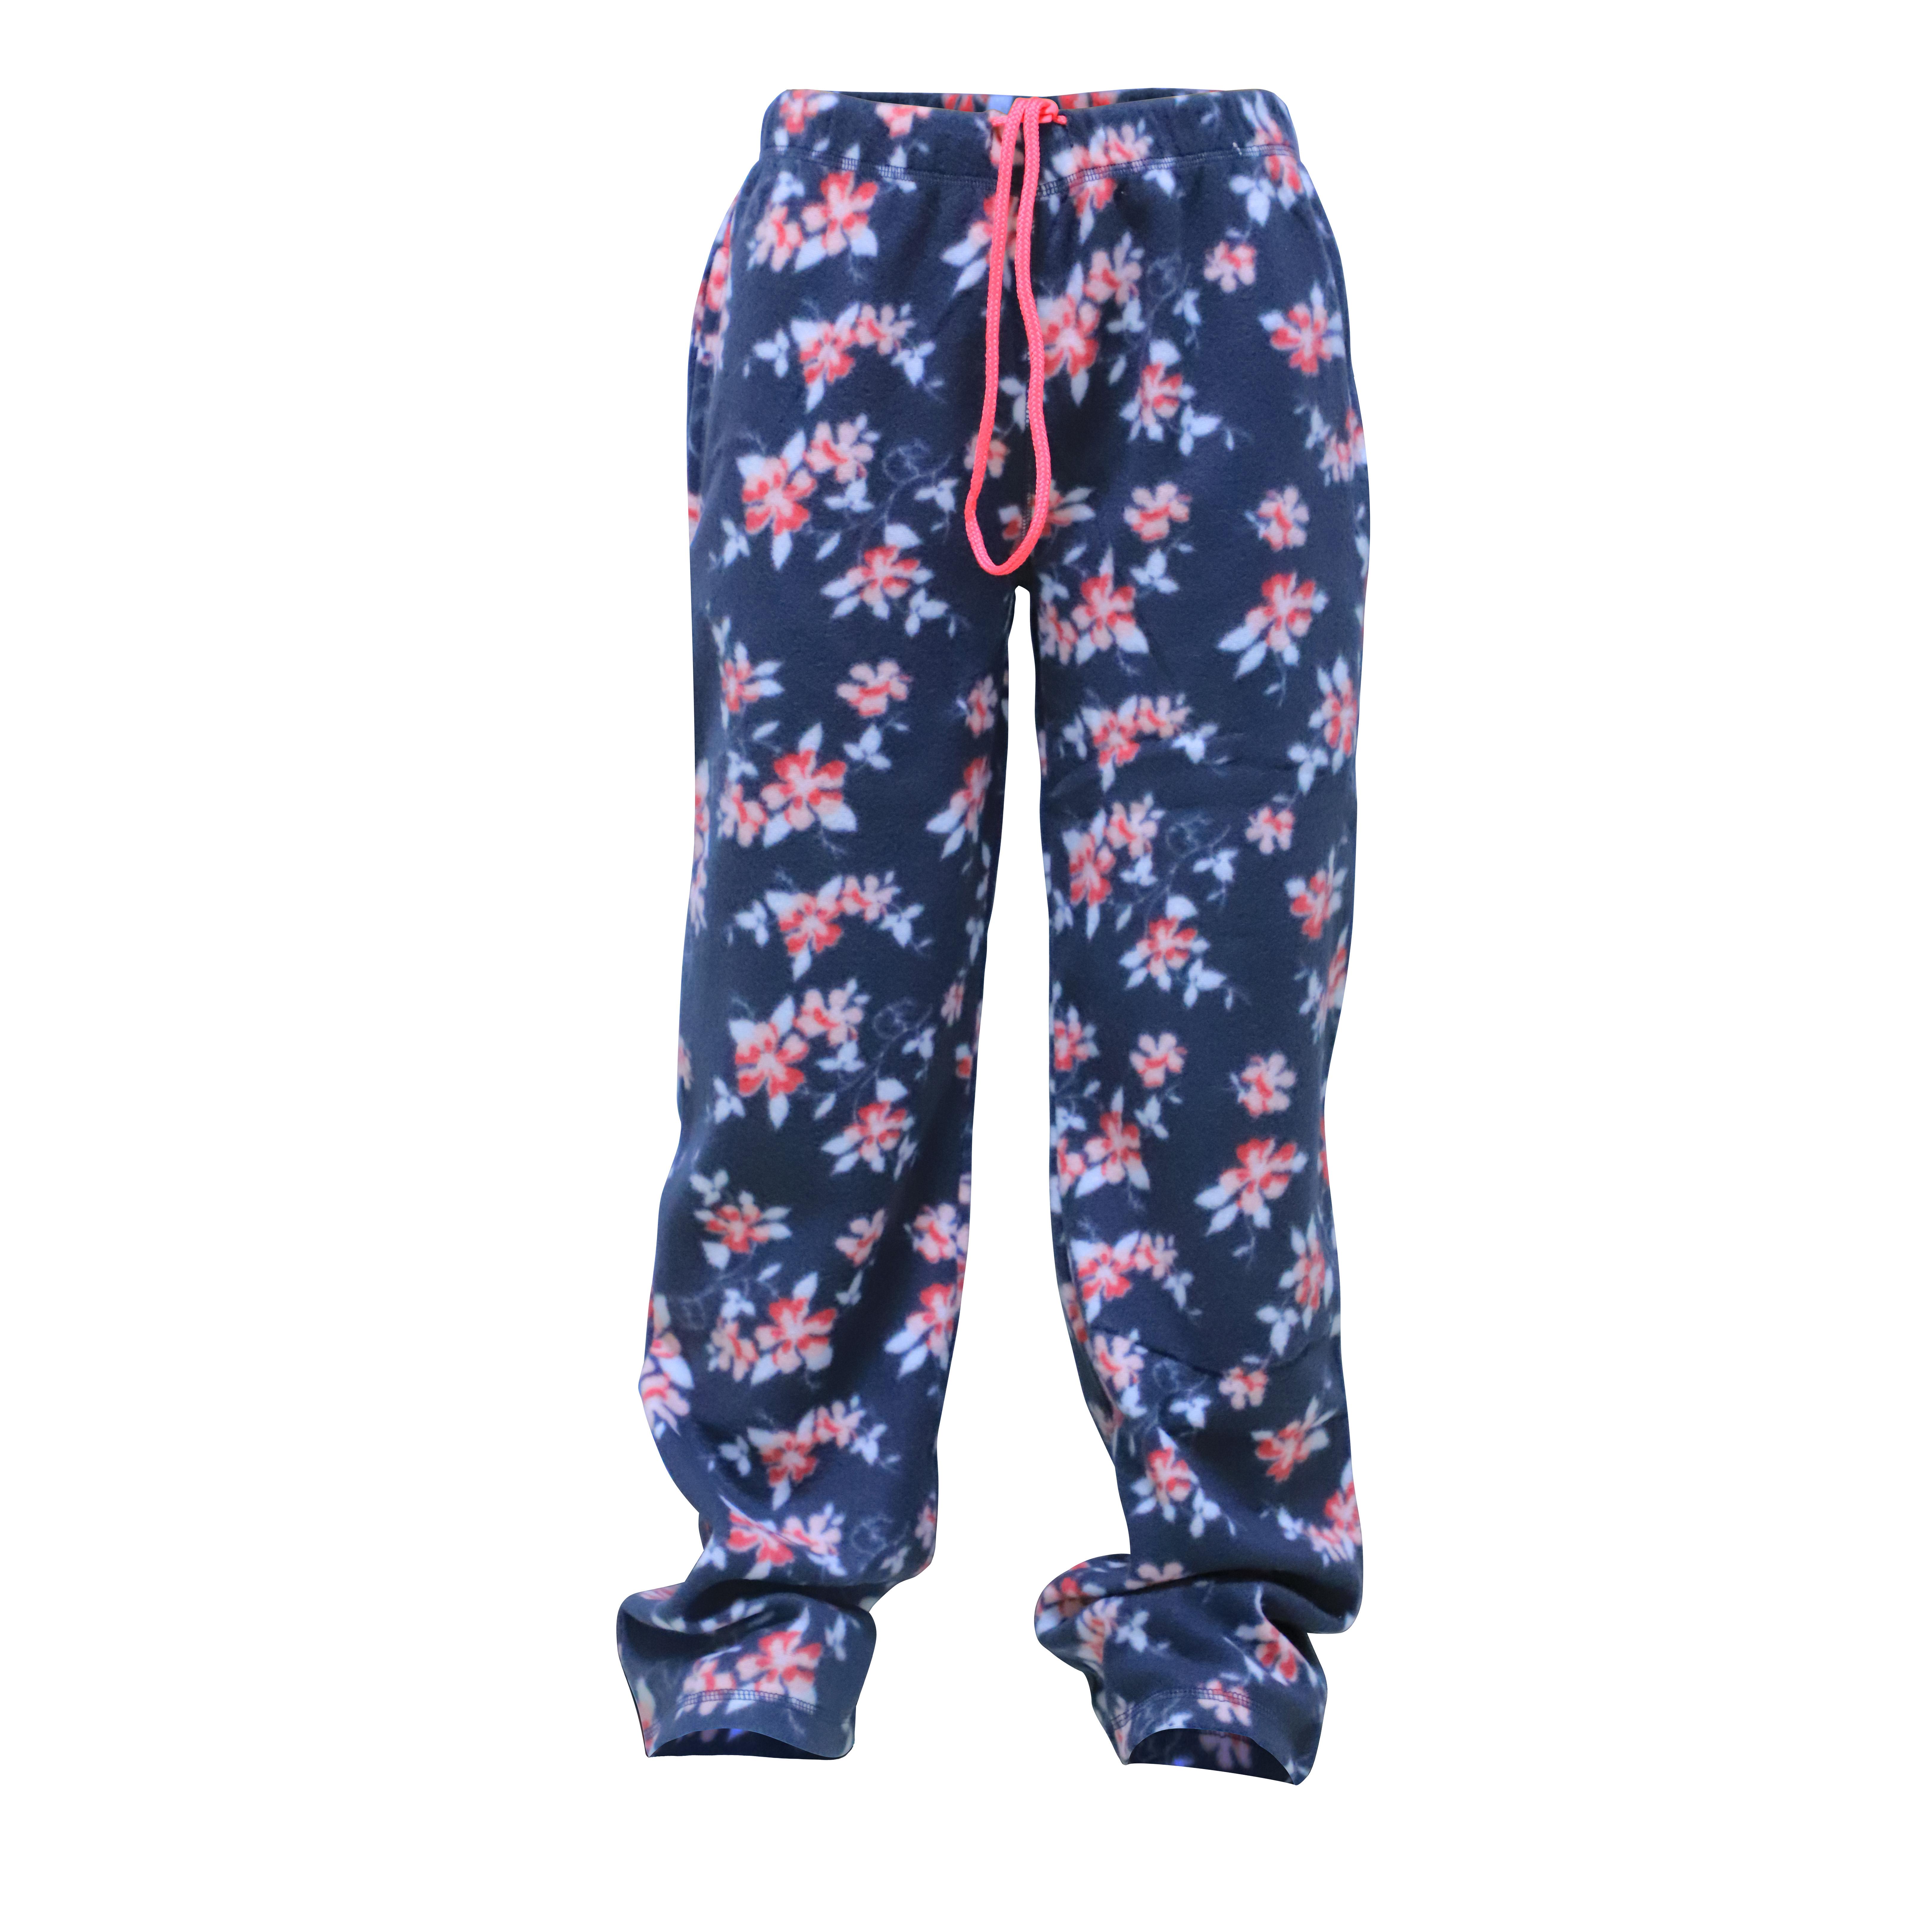 Women's Fleece Pajama PANTS w/ Floral Print - Size Small-2XL